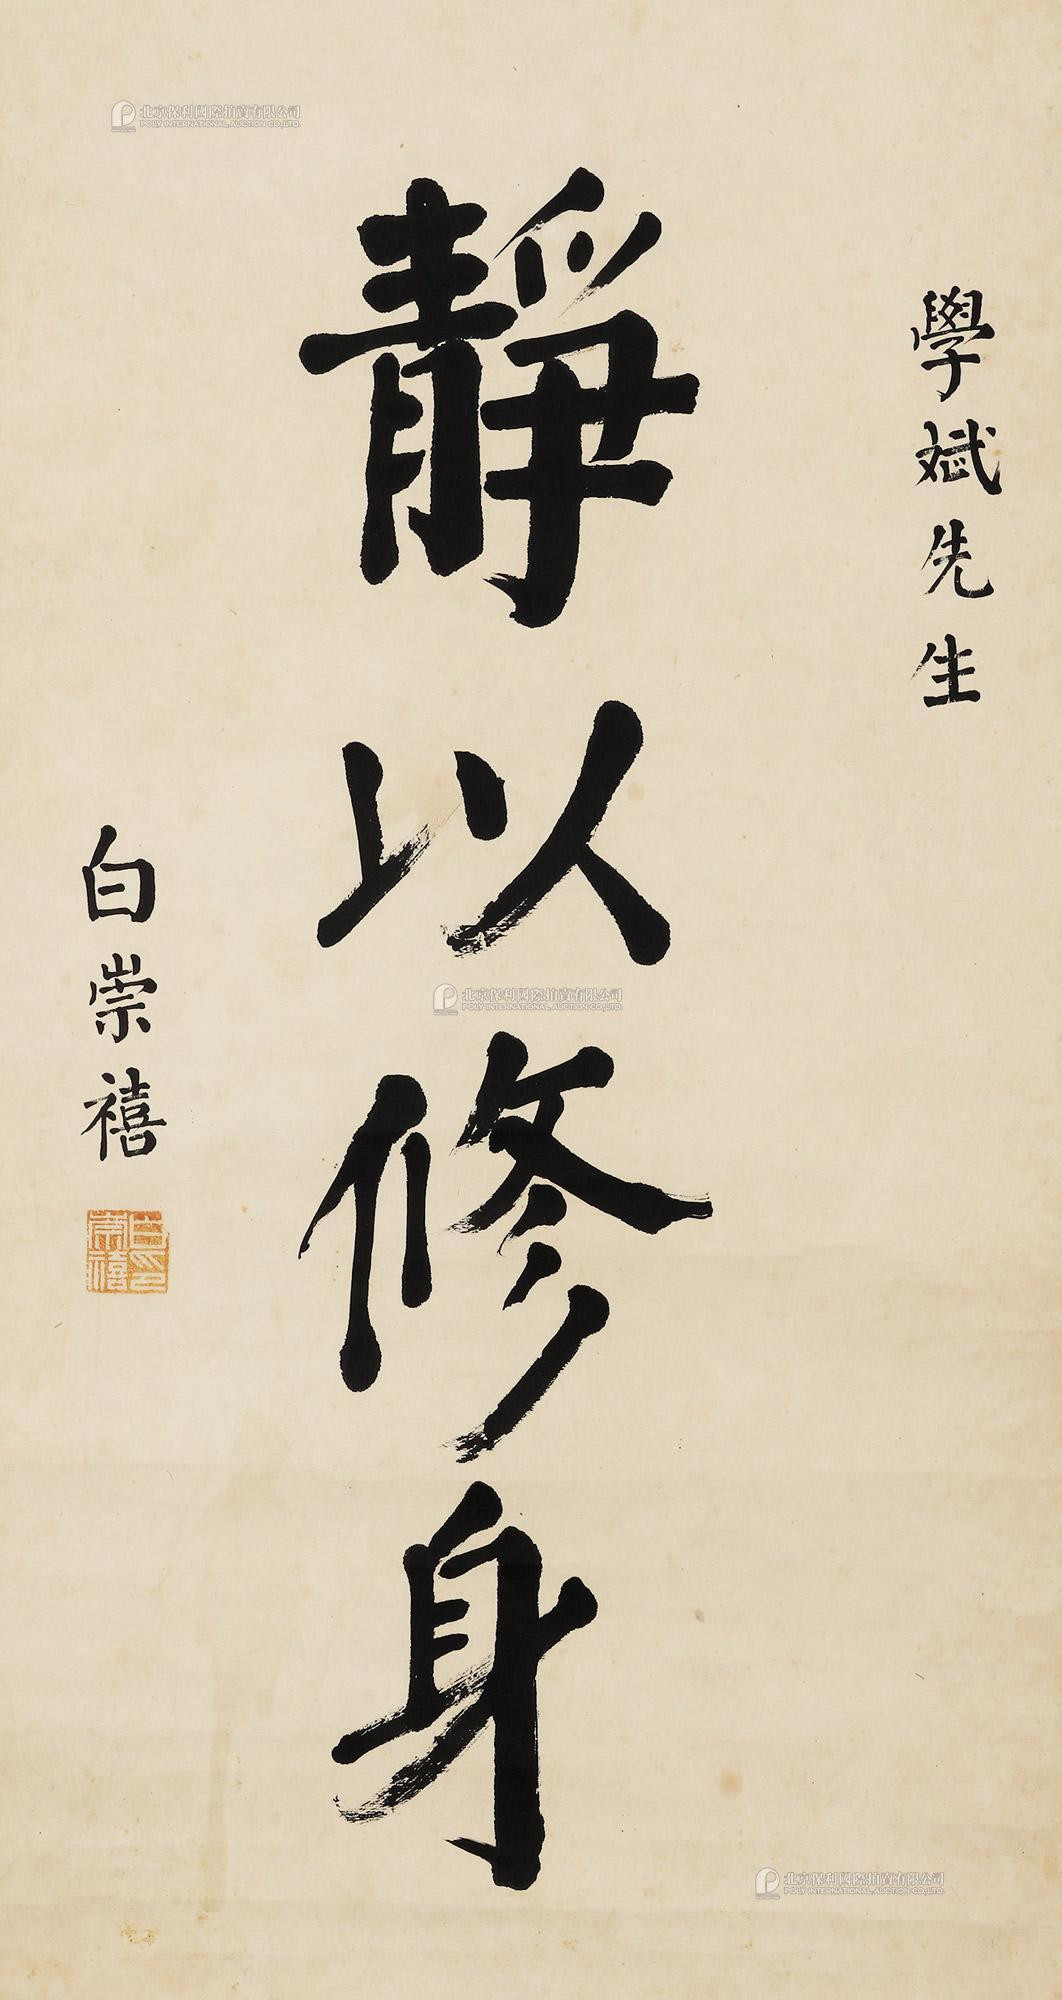 Calligraphy by Bai Chongxi